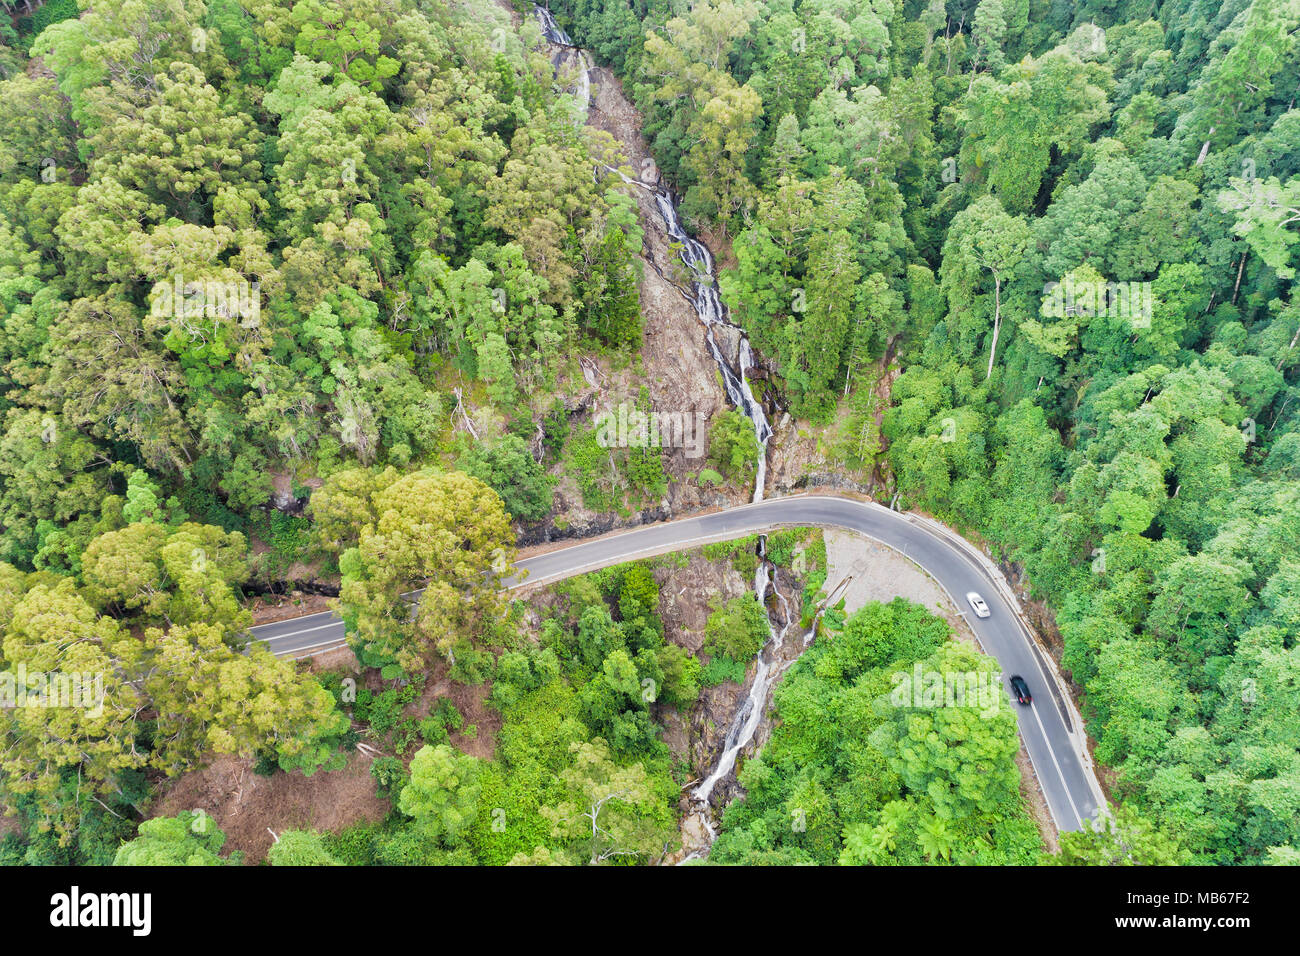 Parque nacional DOrrigo único bosque de Gondwana antigua carretera cortada por cascadas cerca de Newell cascada con exuberantes gumtrees siempreverdes. Foto de stock